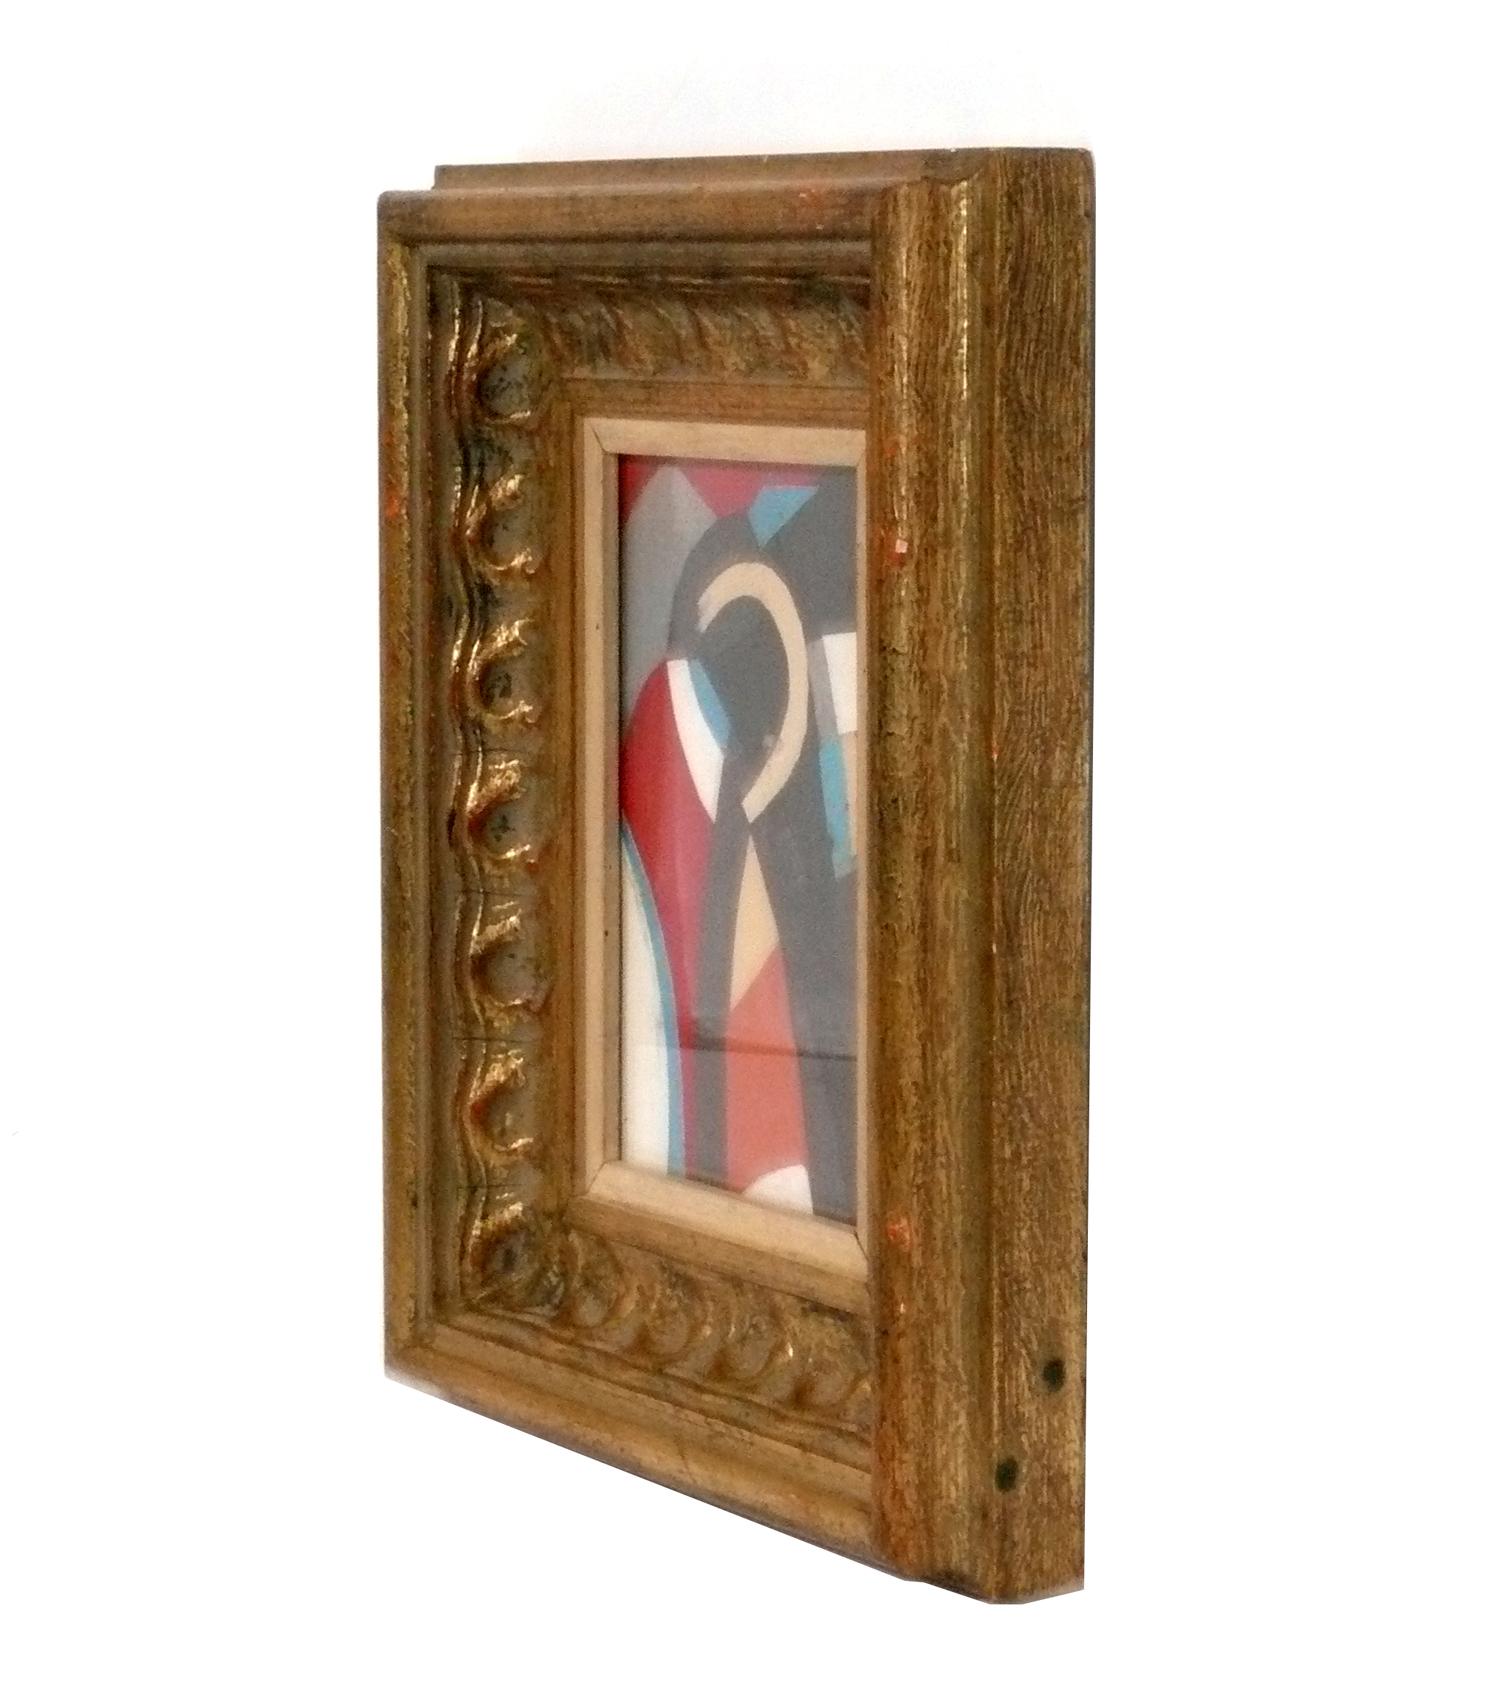 Modernist Prints in Vintage Gilt Frames Picasso Miro Fogel For Sale 1